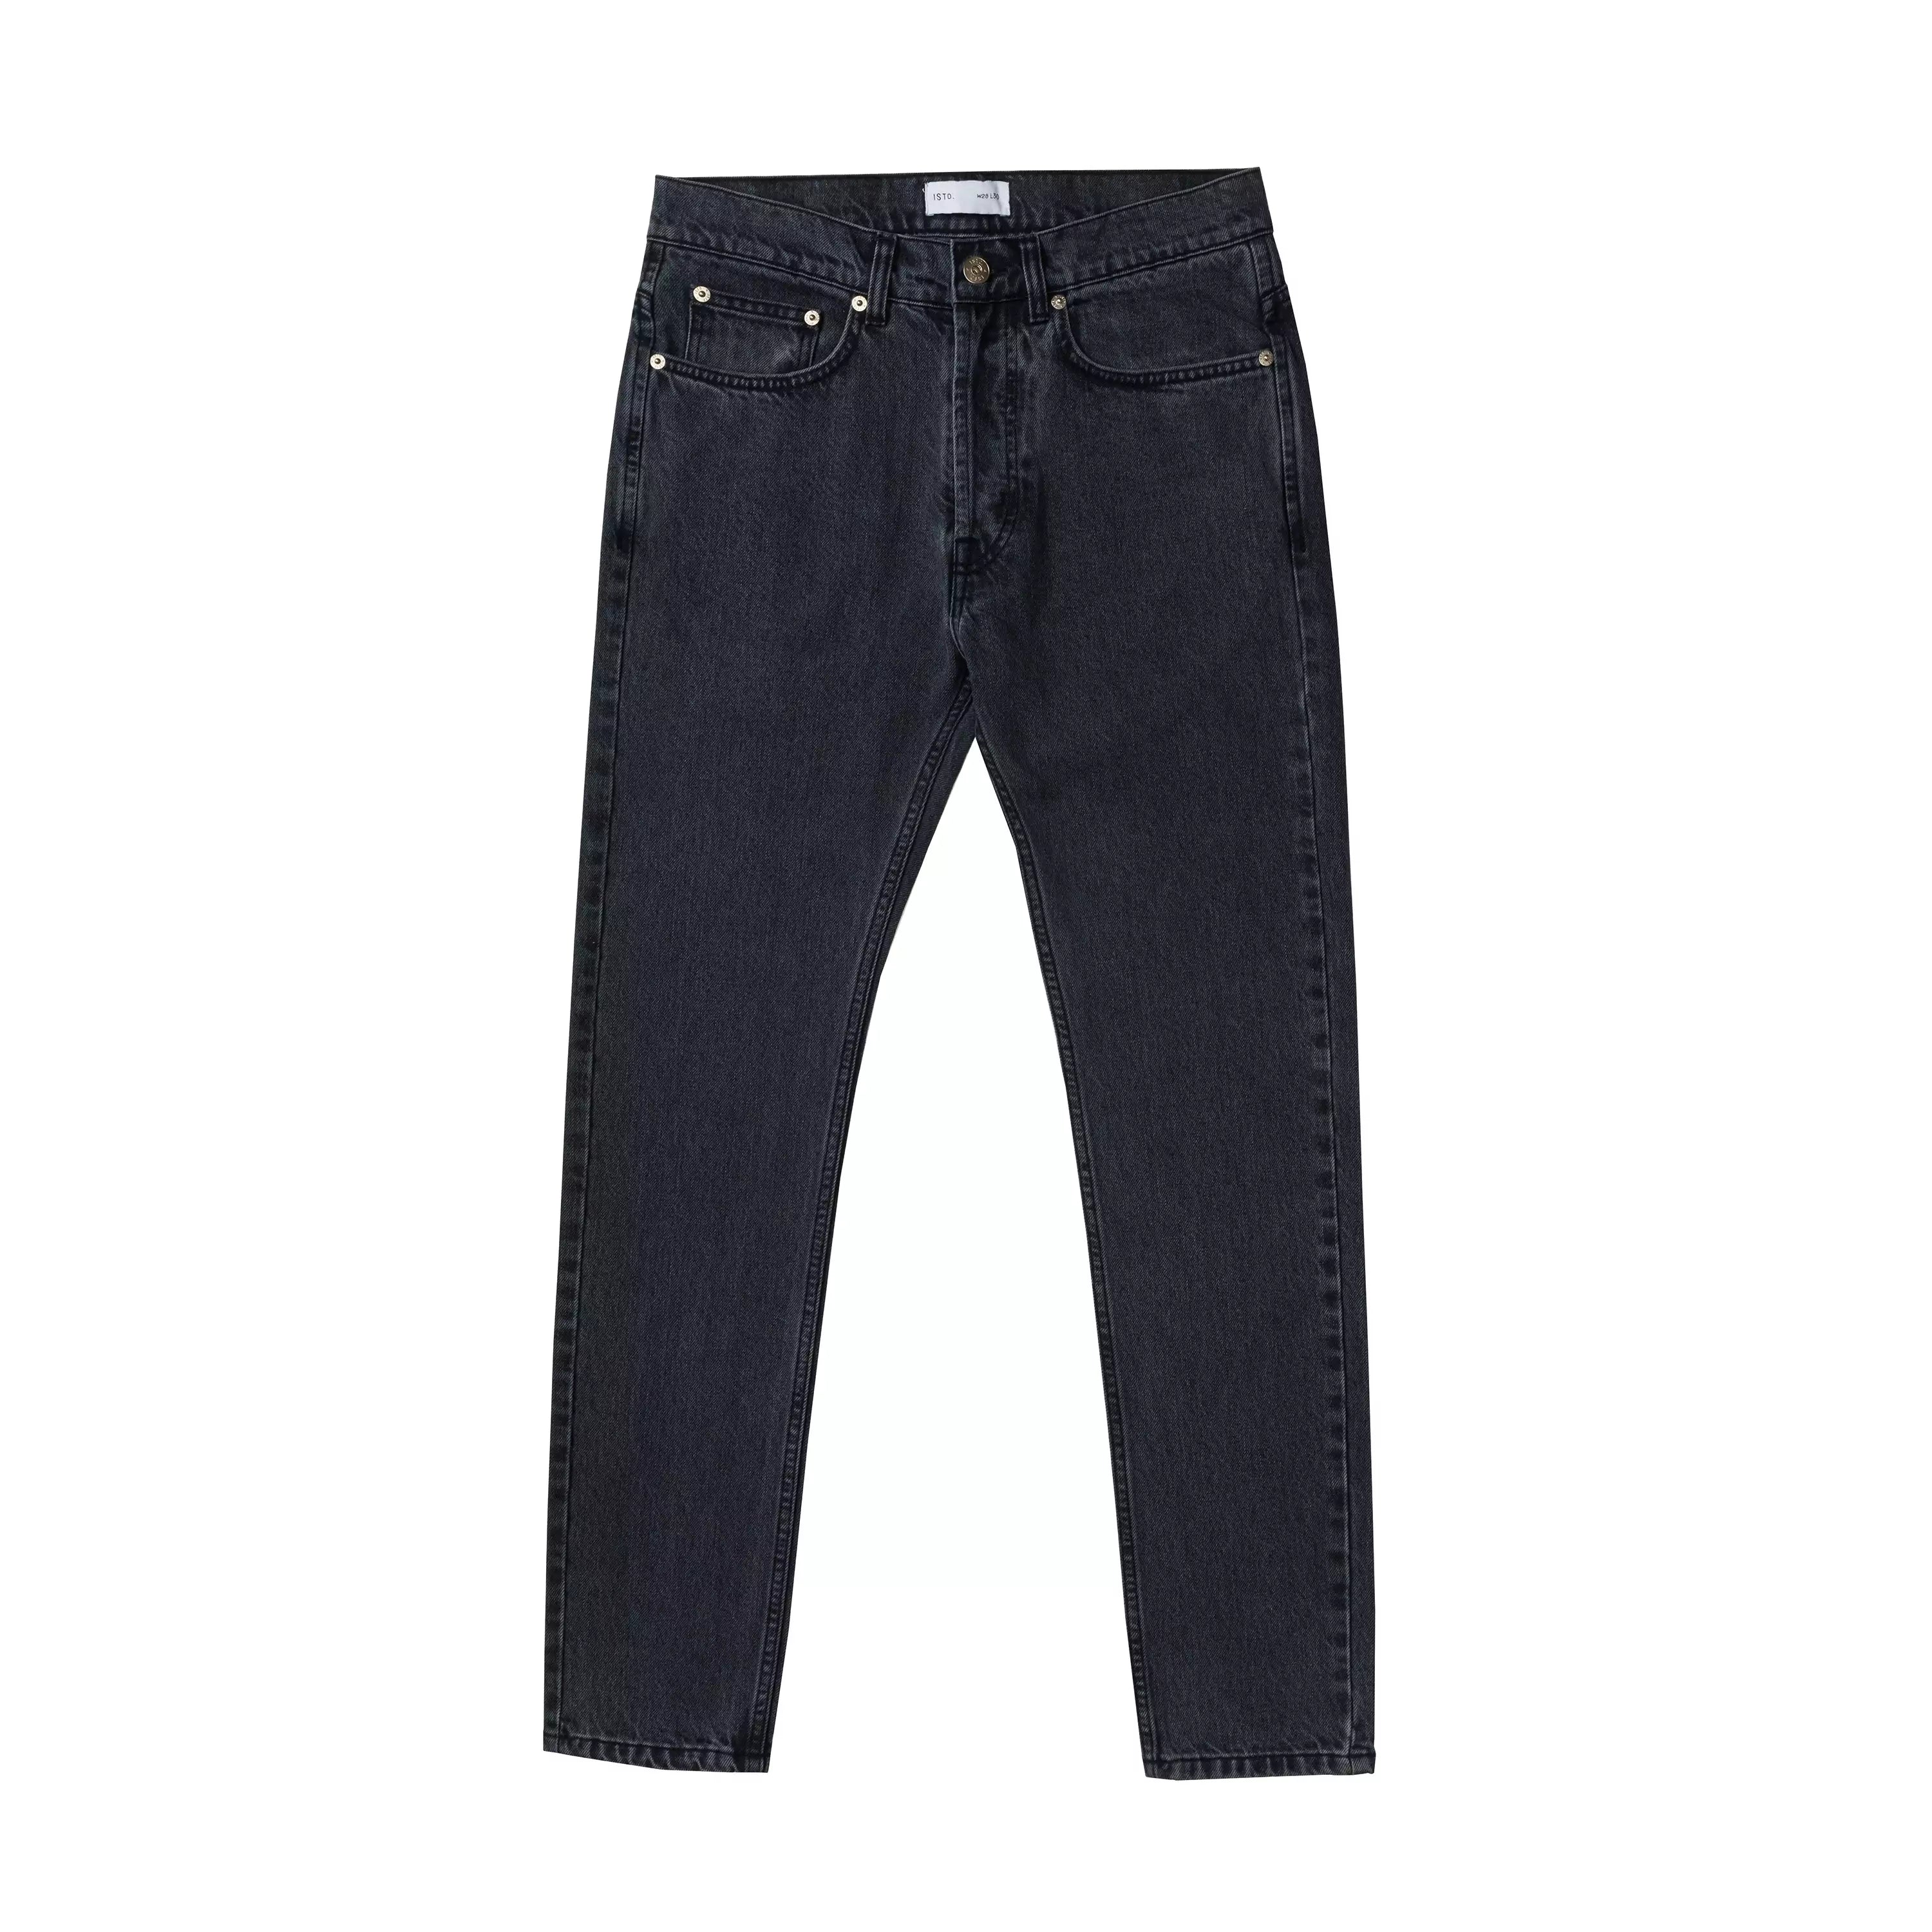 バギーデニム【jaded london】 Washed Black  Jeans w28